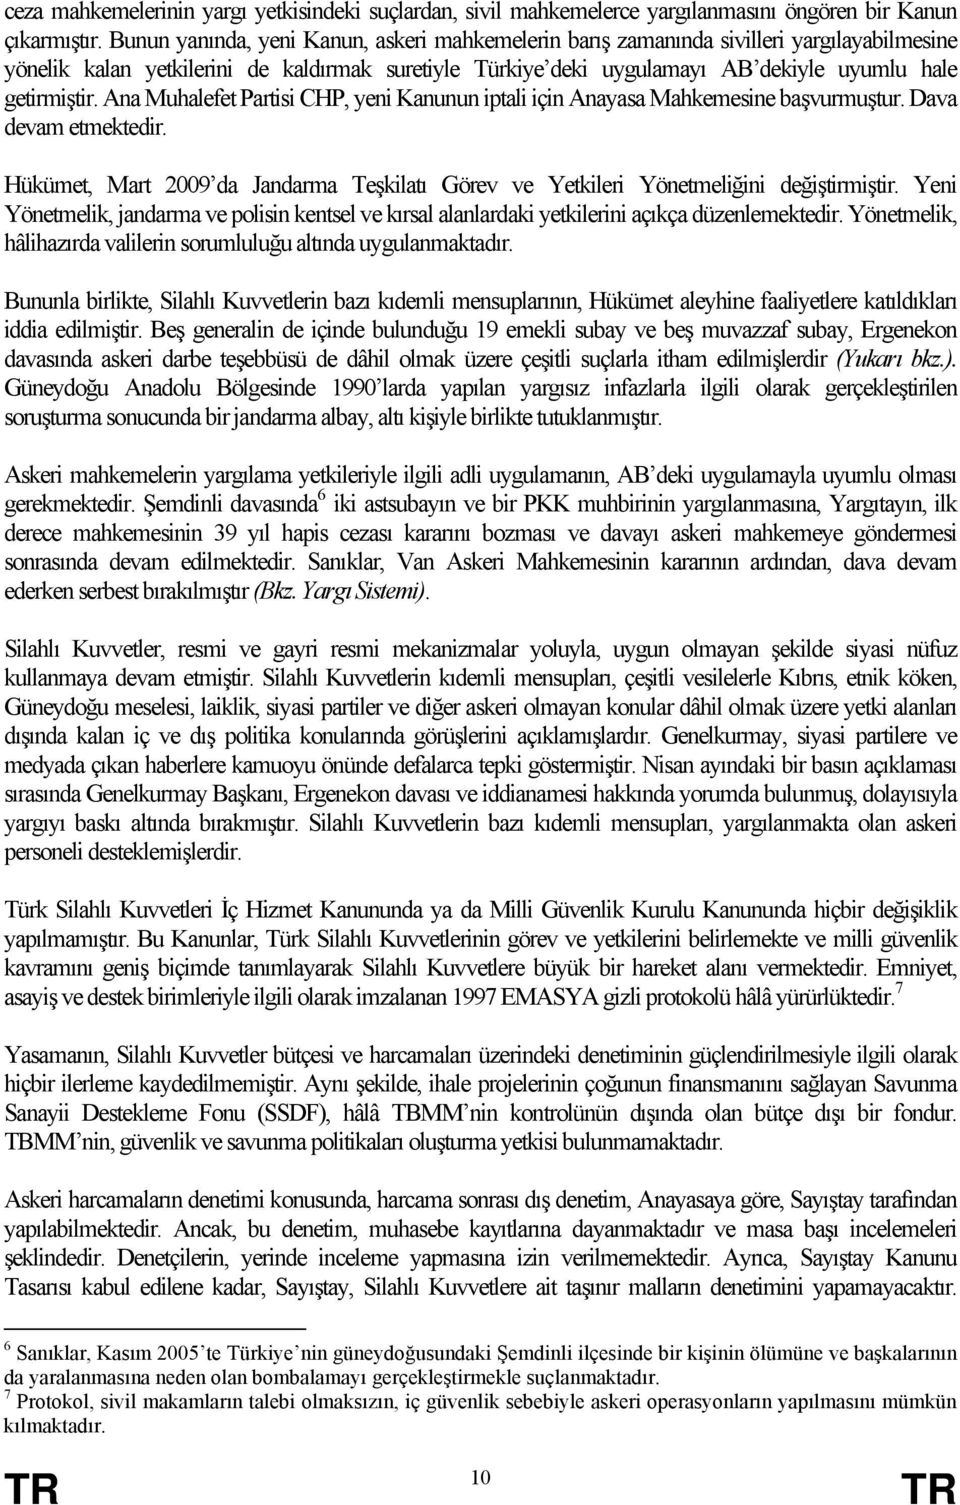 Ana Muhalefet Partisi CHP, yeni Kanunun iptali için Anayasa Mahkemesine başvurmuştur. Dava devam etmektedir. Hükümet, Mart 2009 da Jandarma Teşkilatı Görev ve Yetkileri Yönetmeliğini değiştirmiştir.